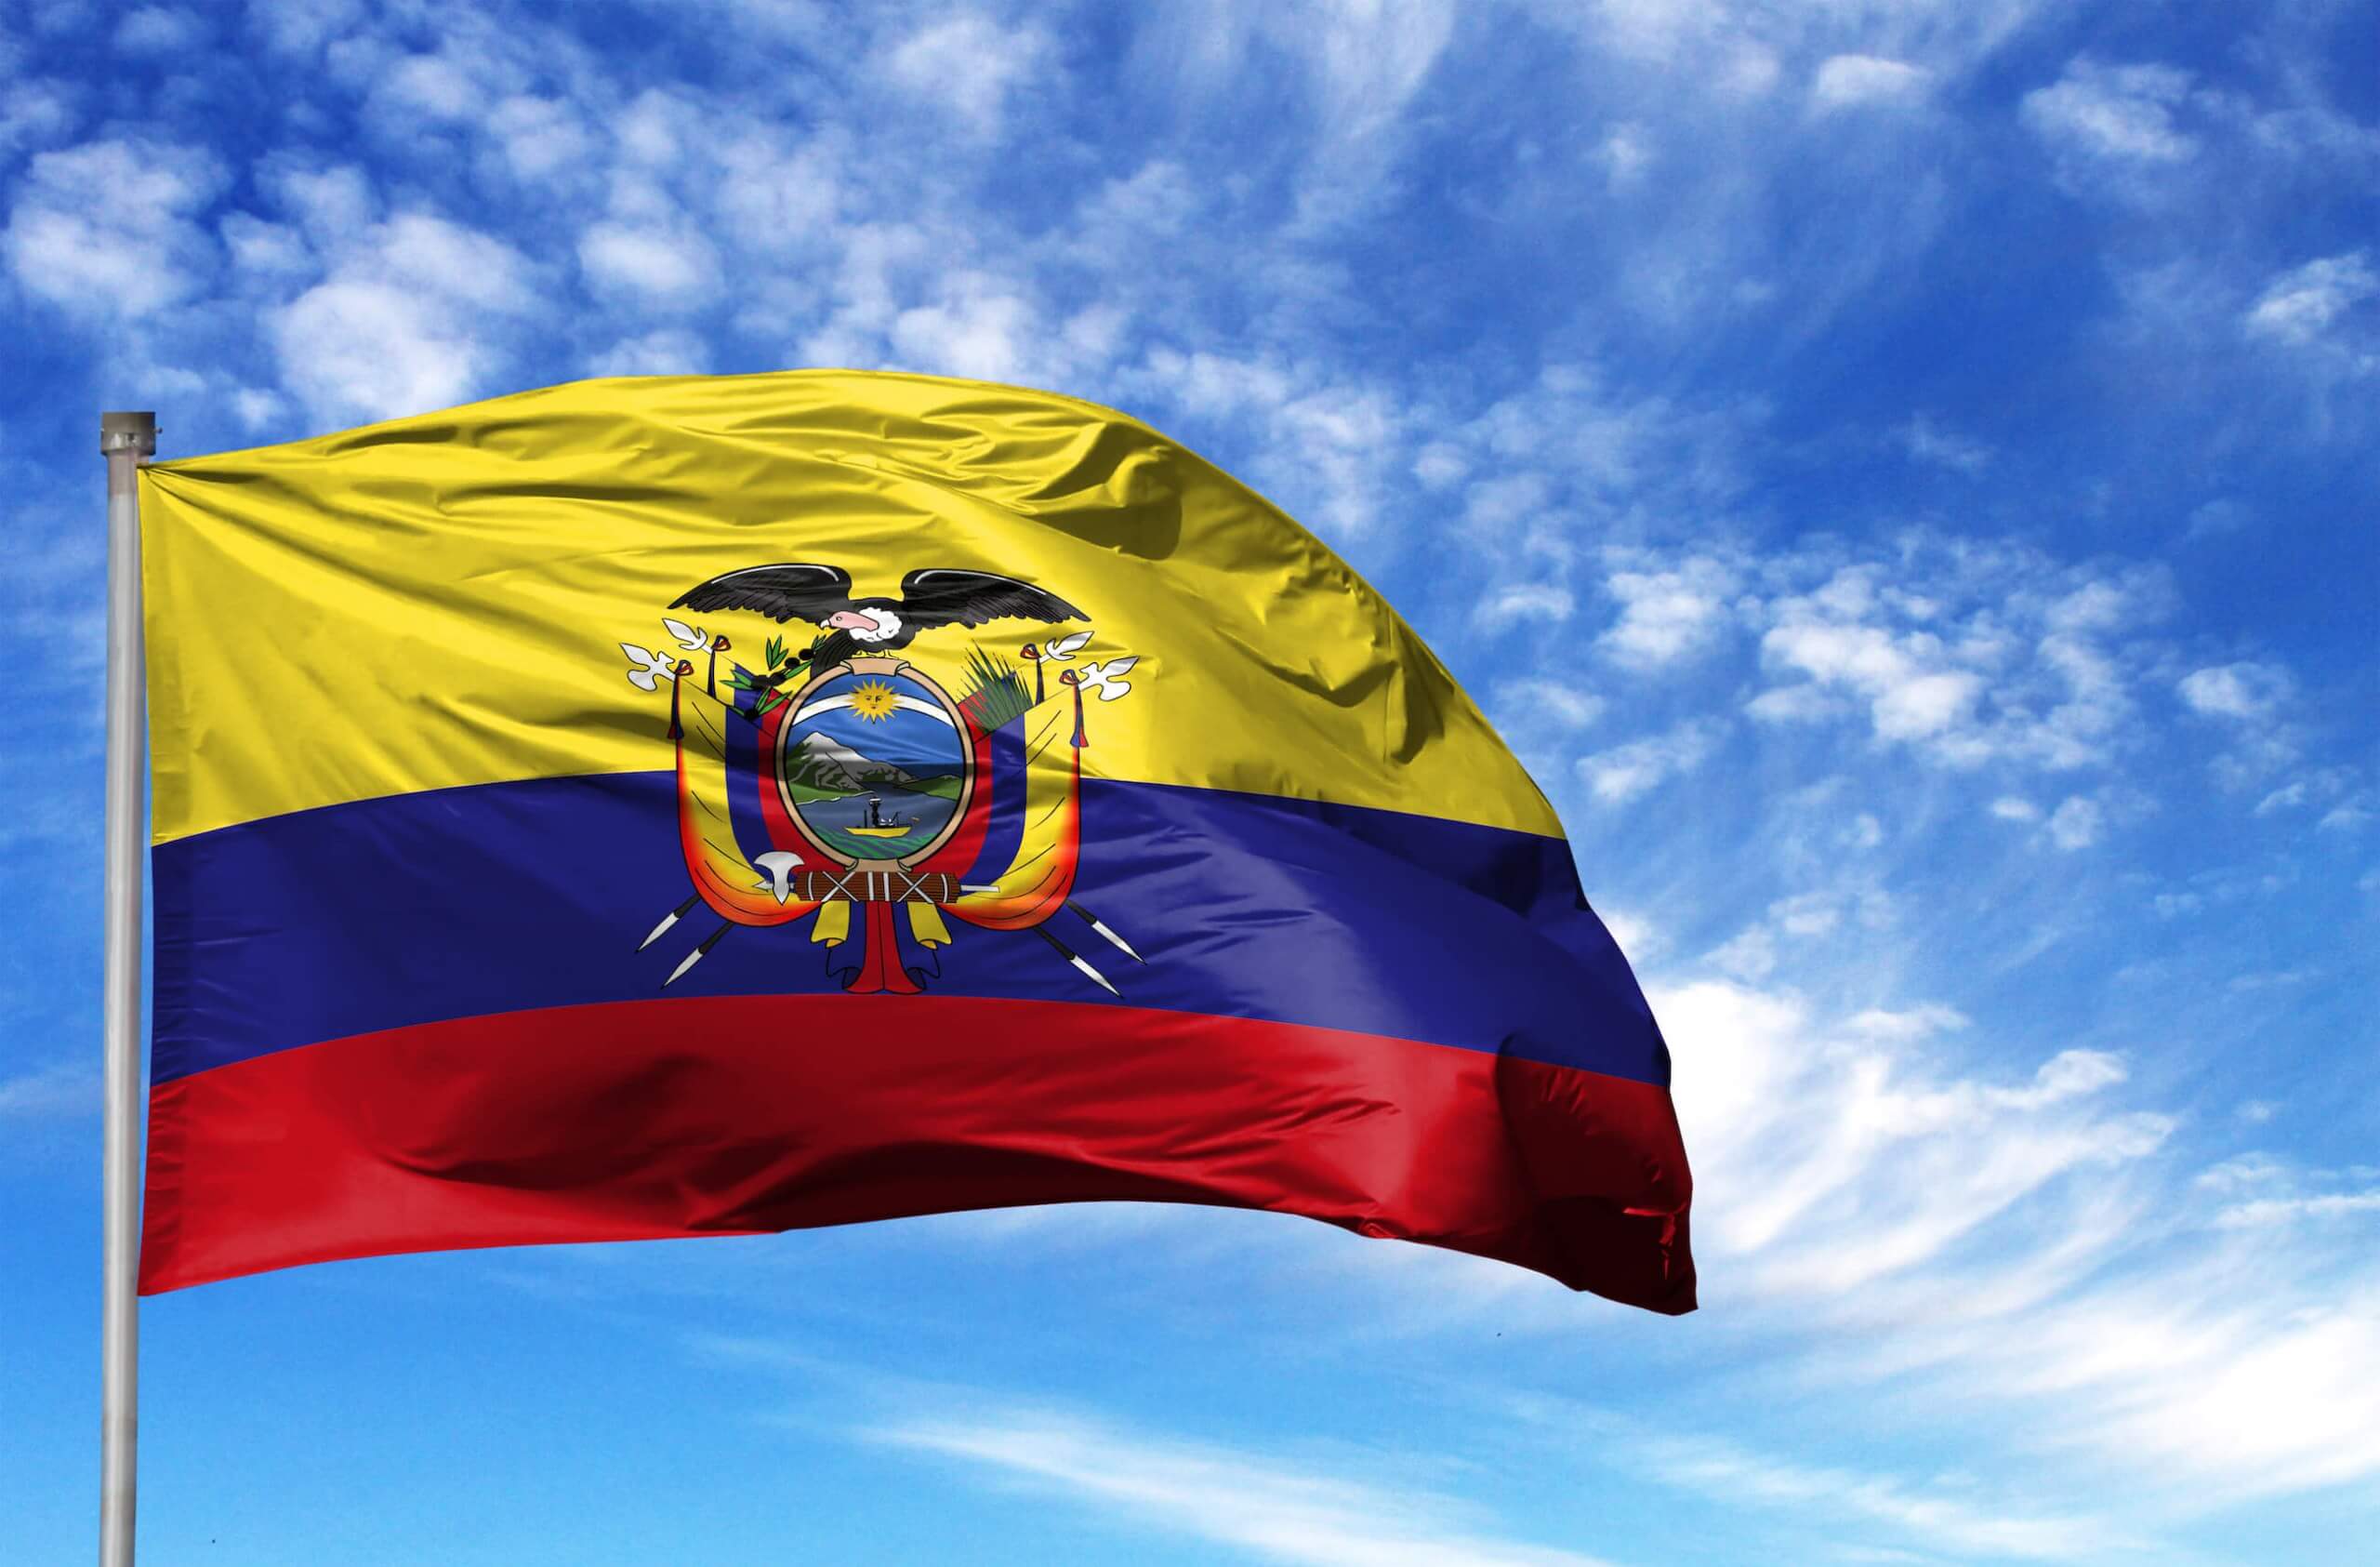 Data leak exposes personal data of nearly everyone in Ecuador